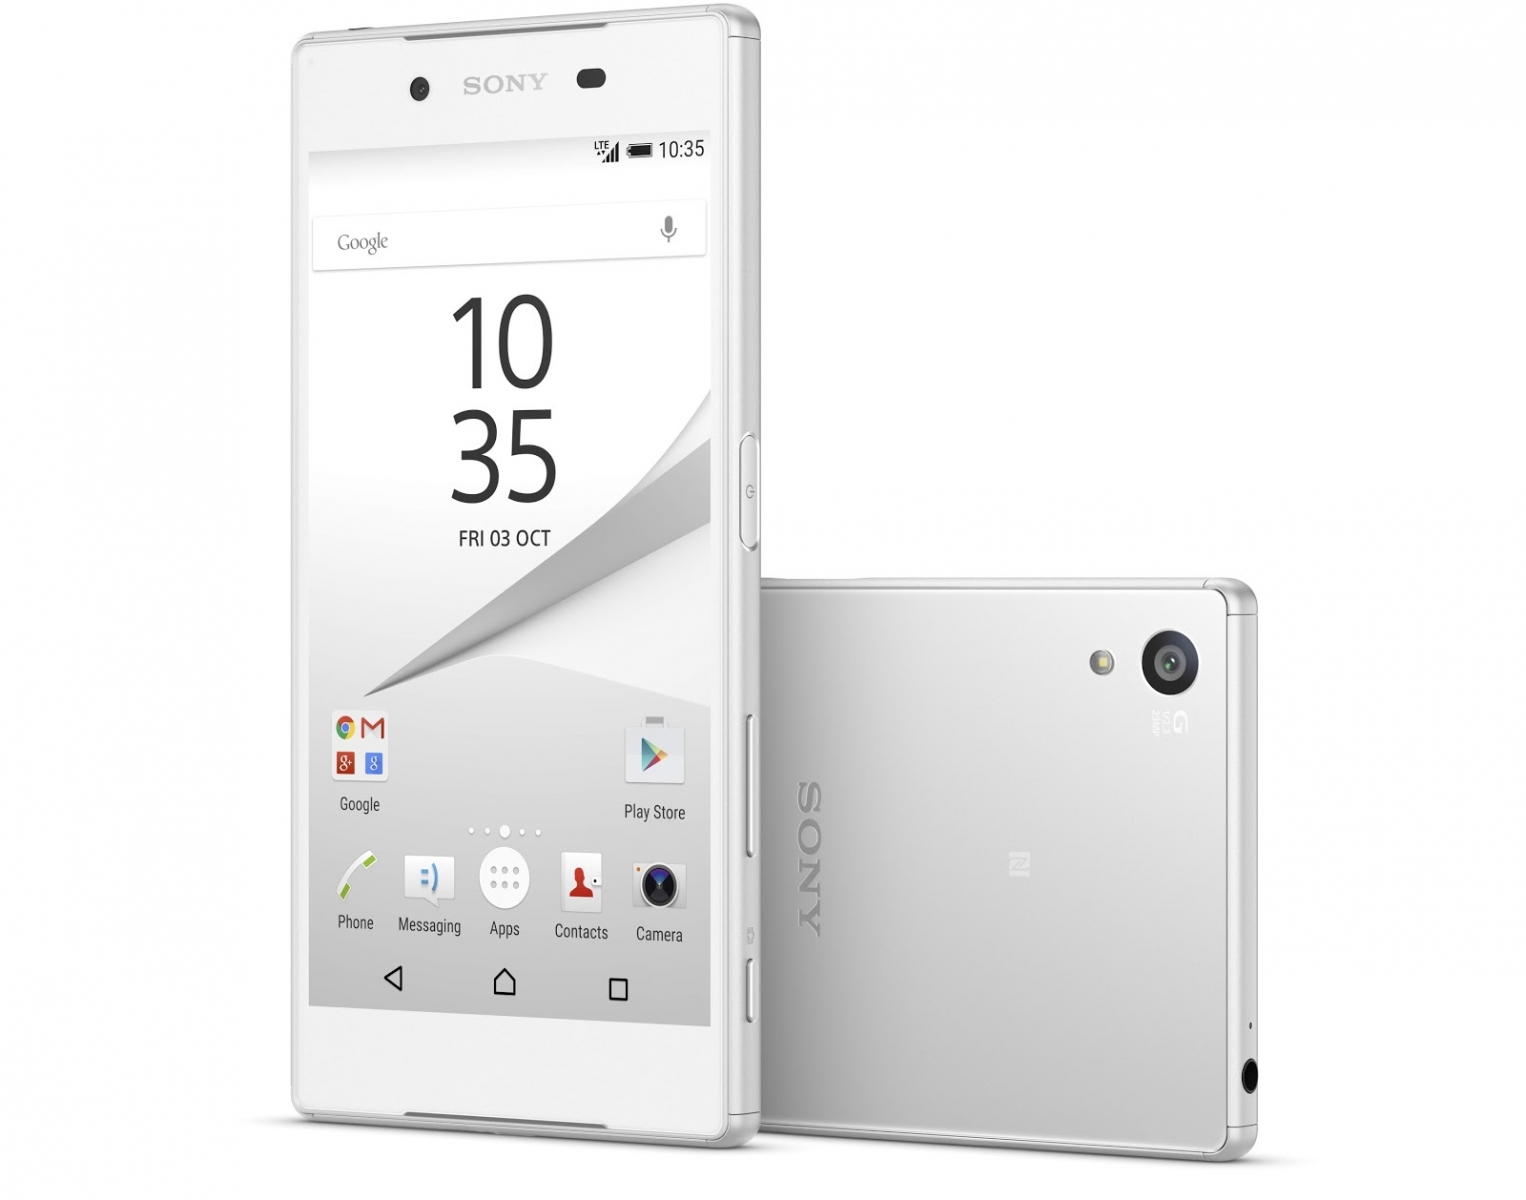 Sony Xperia Z5 costa 2.800 lei prin intermediul Vodafone România, preț fara abonament